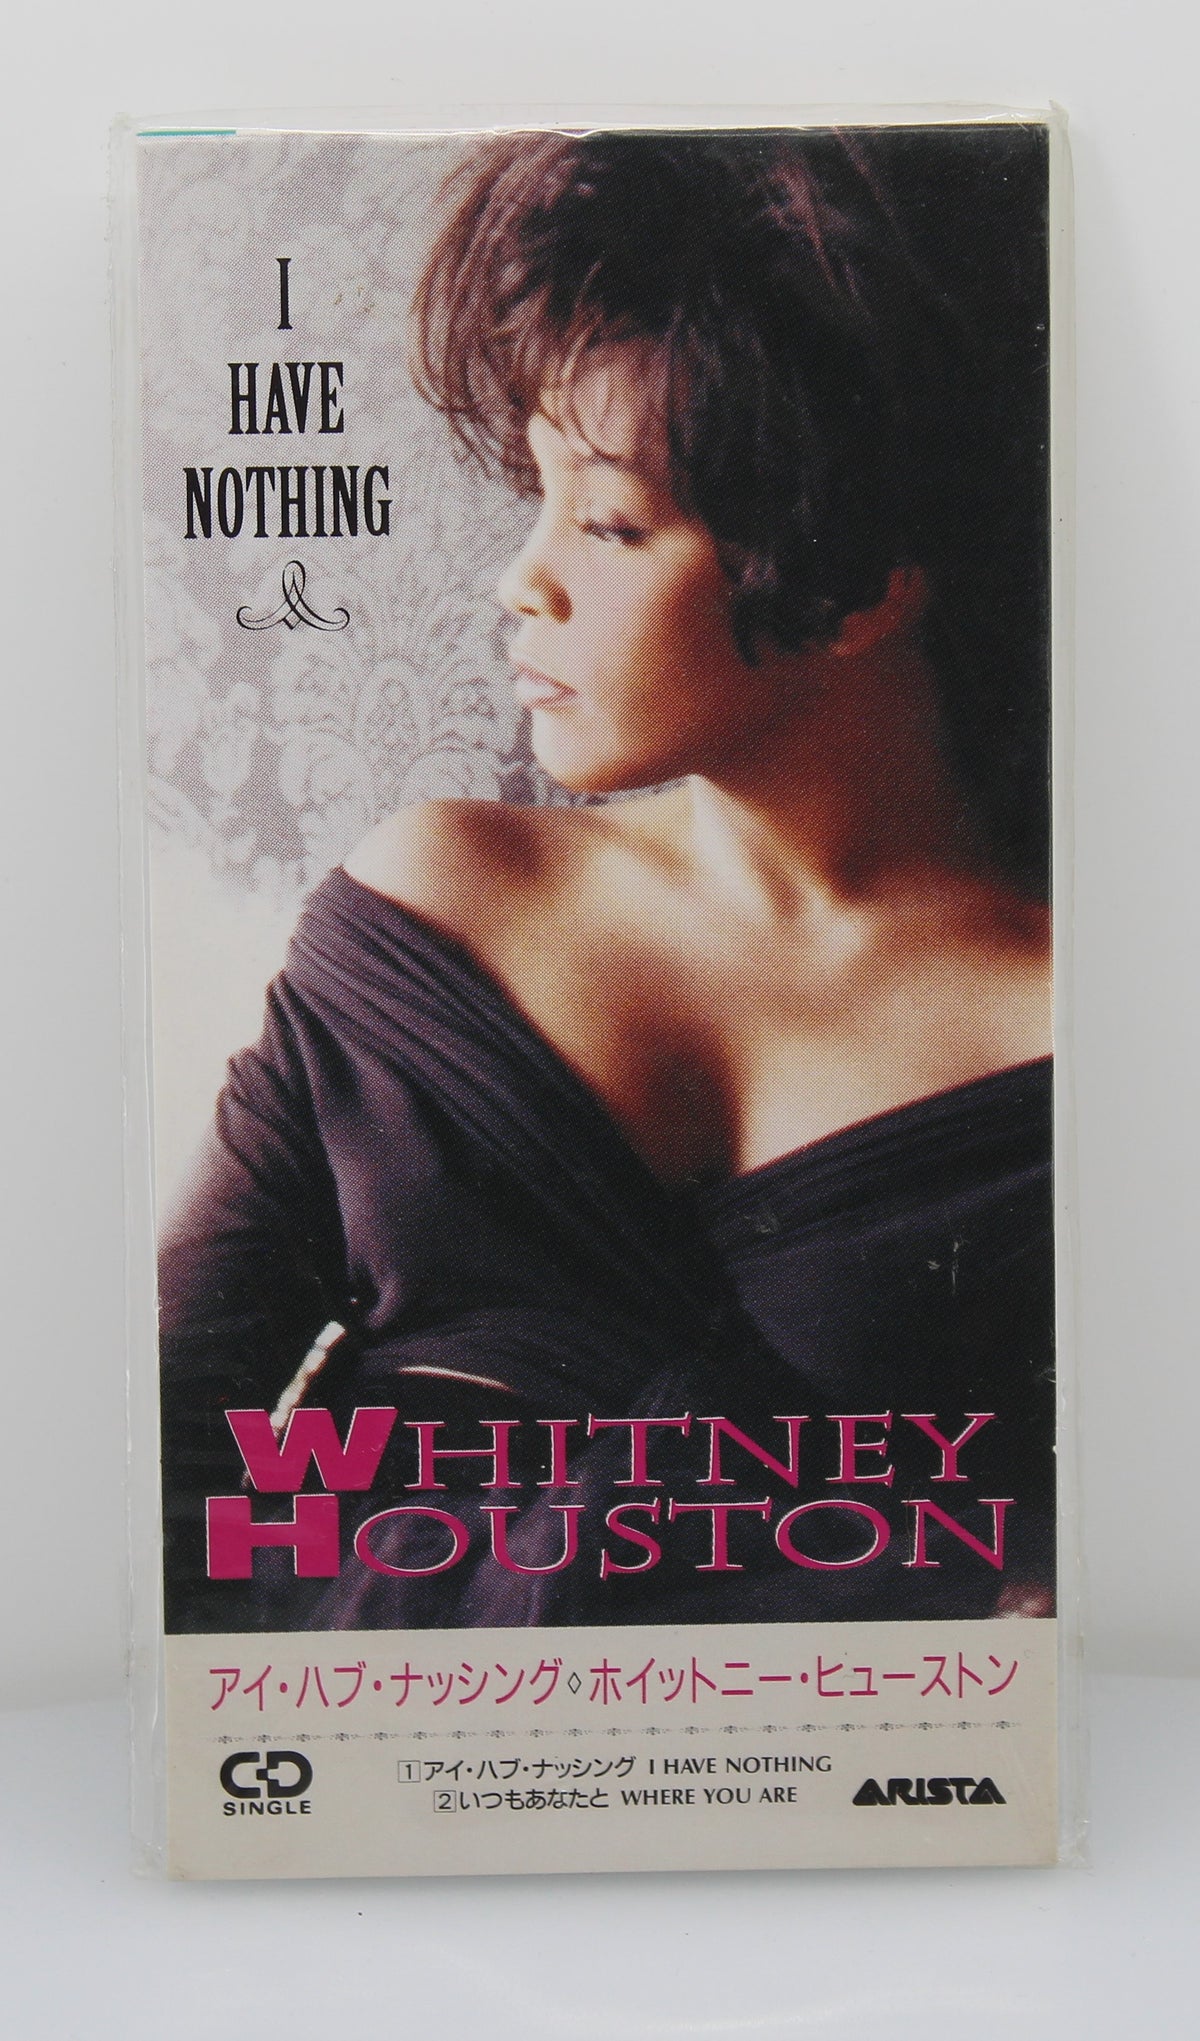 Whitney Houston – I Have Nothing, CD, Mini, Single, Japan 1993